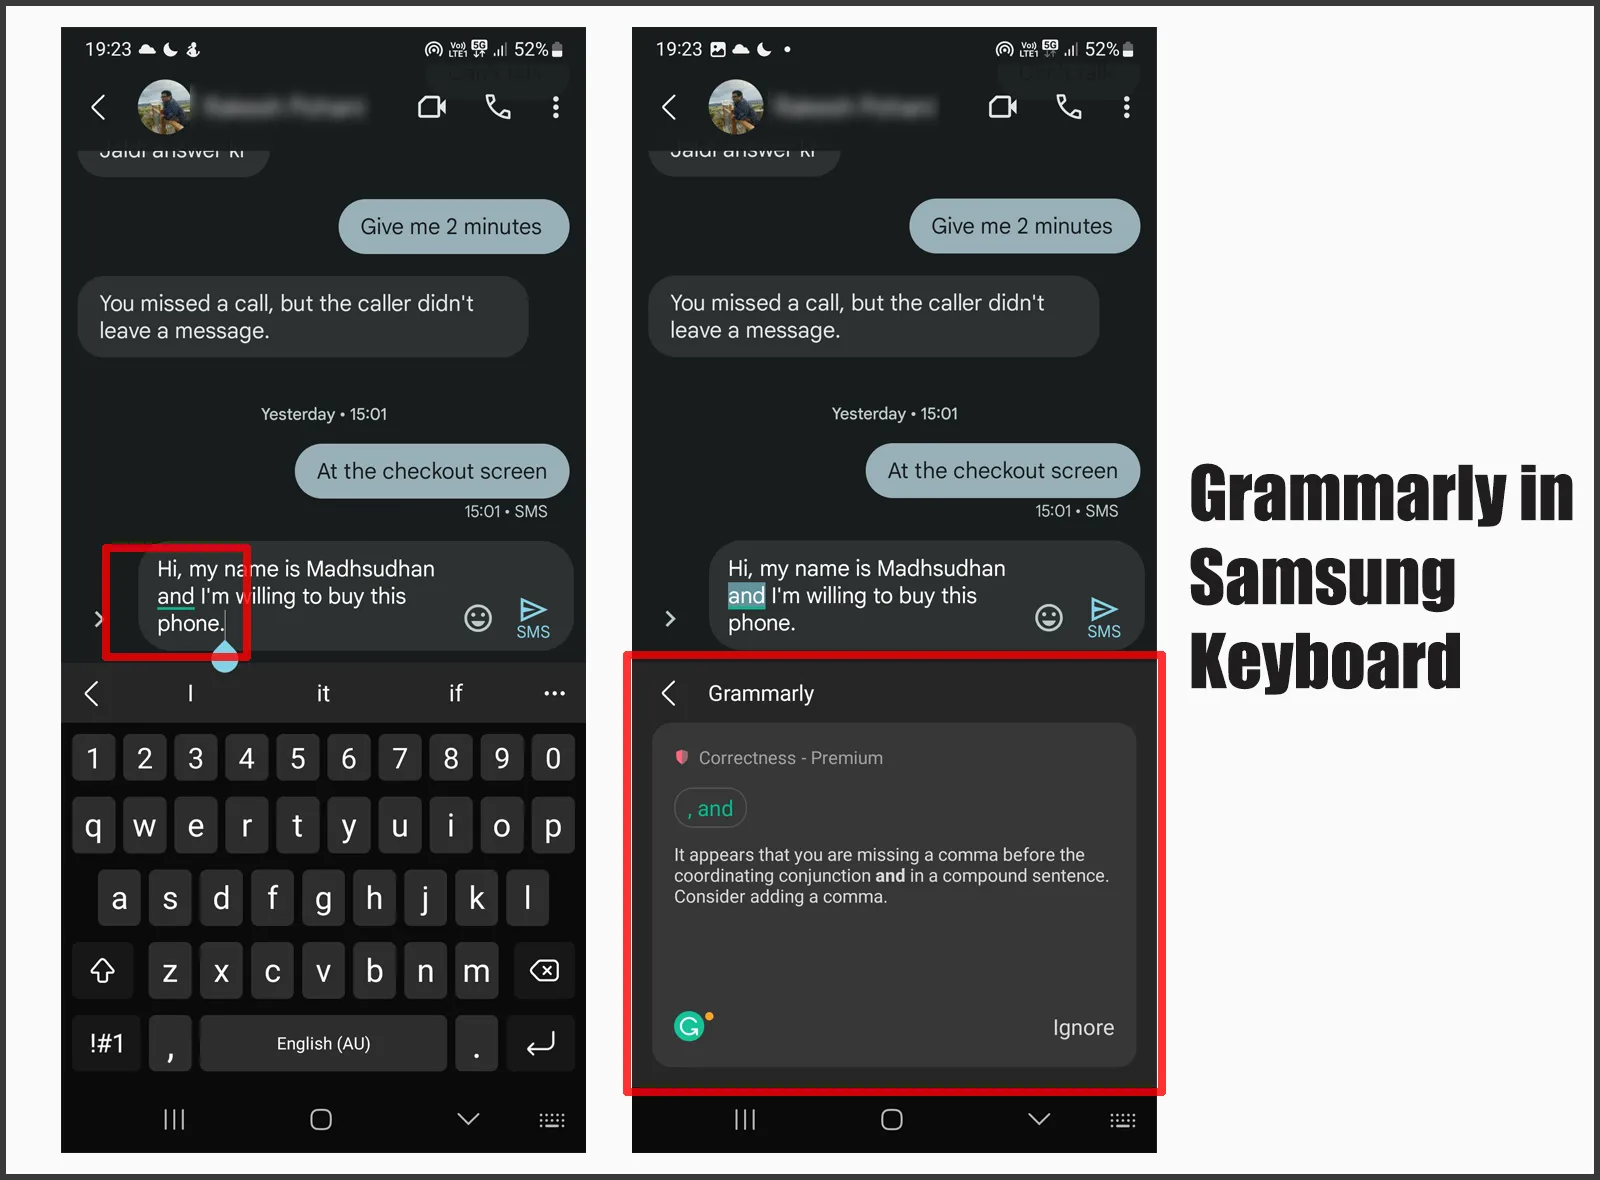 Grammarly in Samsung Keyboard